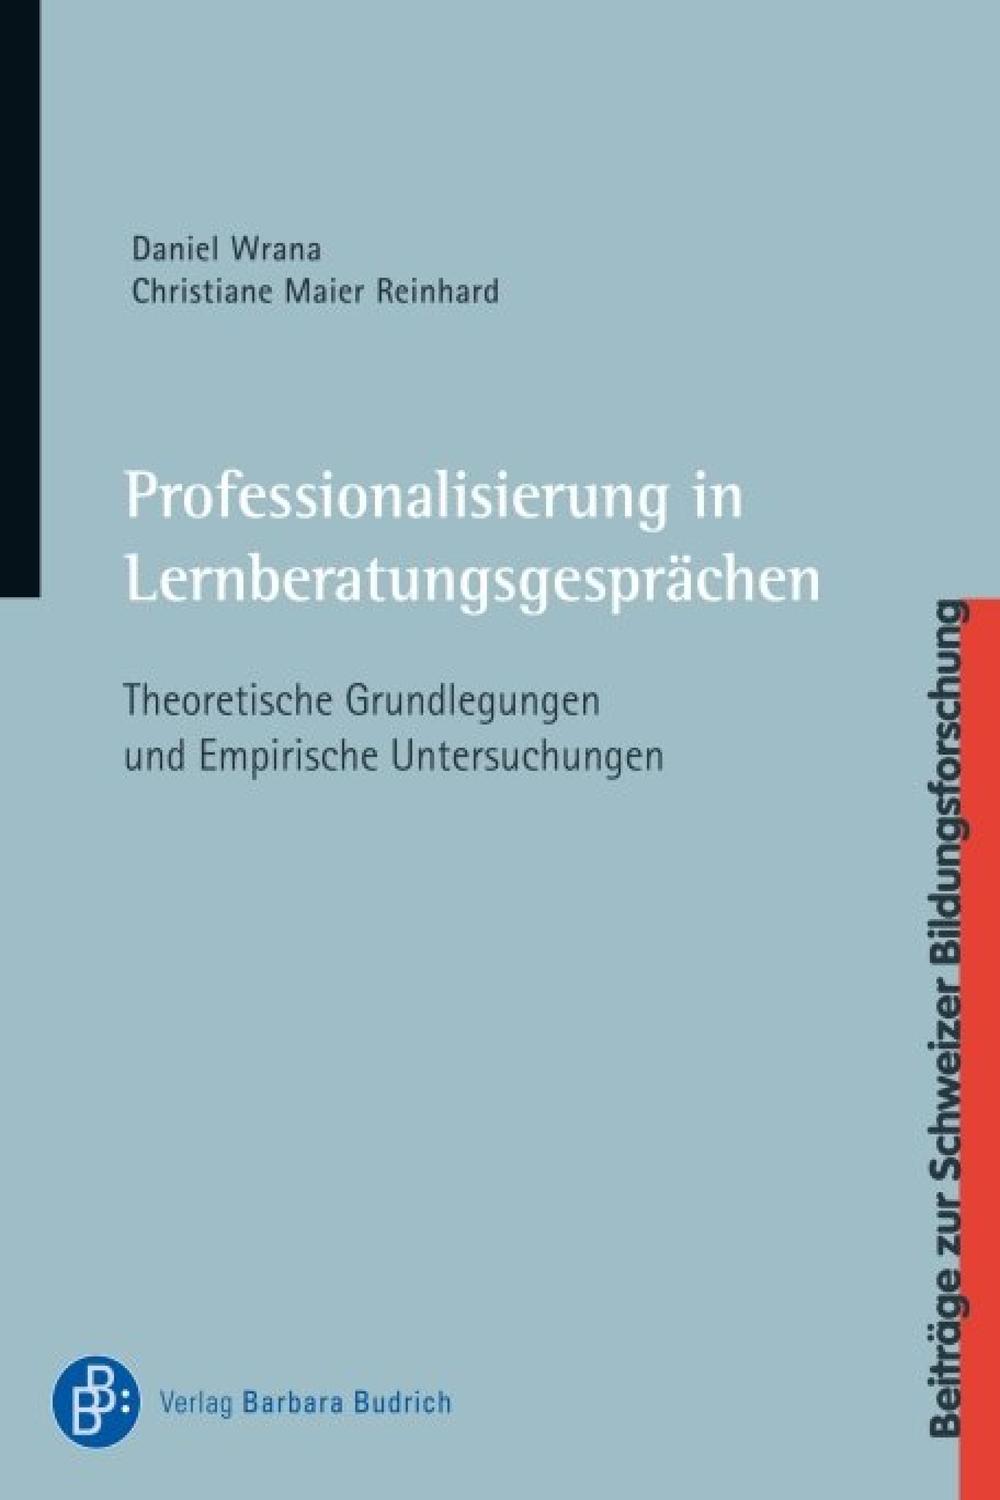 Professionalisierung in Lernberatungsgesprächen - Daniel Wrana, Christiane Maier Reinhard